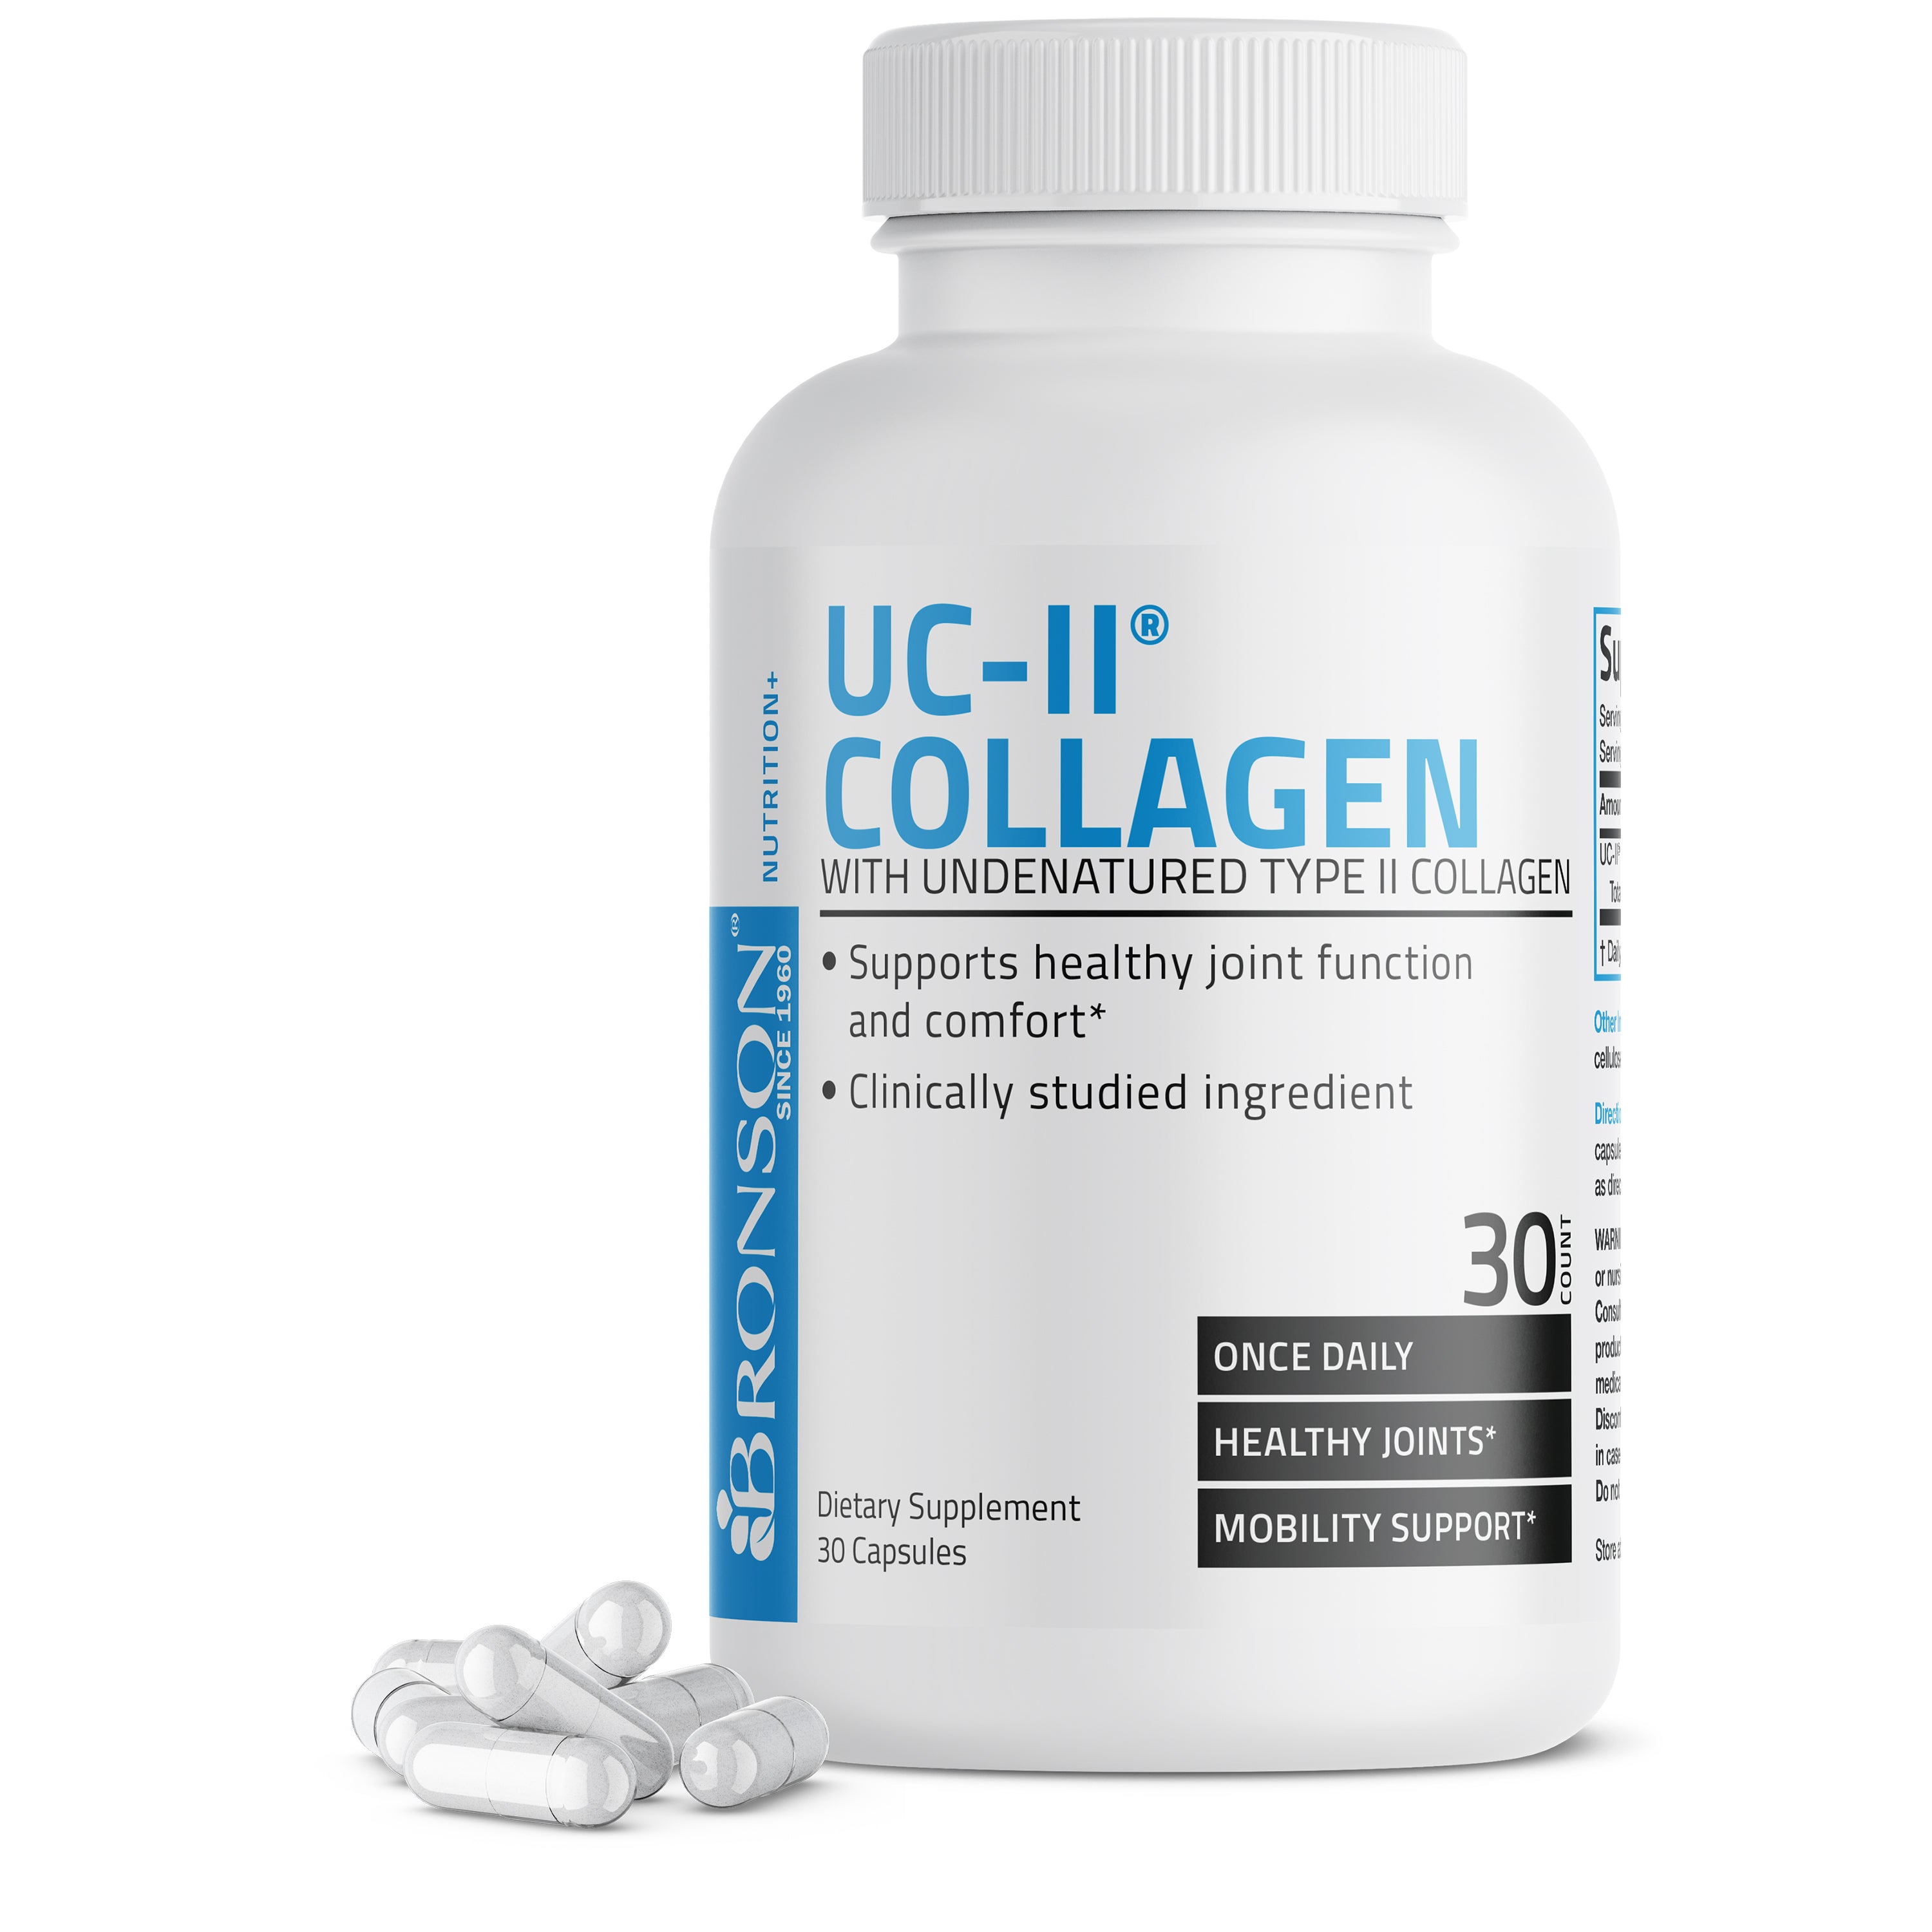 UC-II® Collagen with Undenatured Type II Collagen - 30 Capsules view 1 of 6